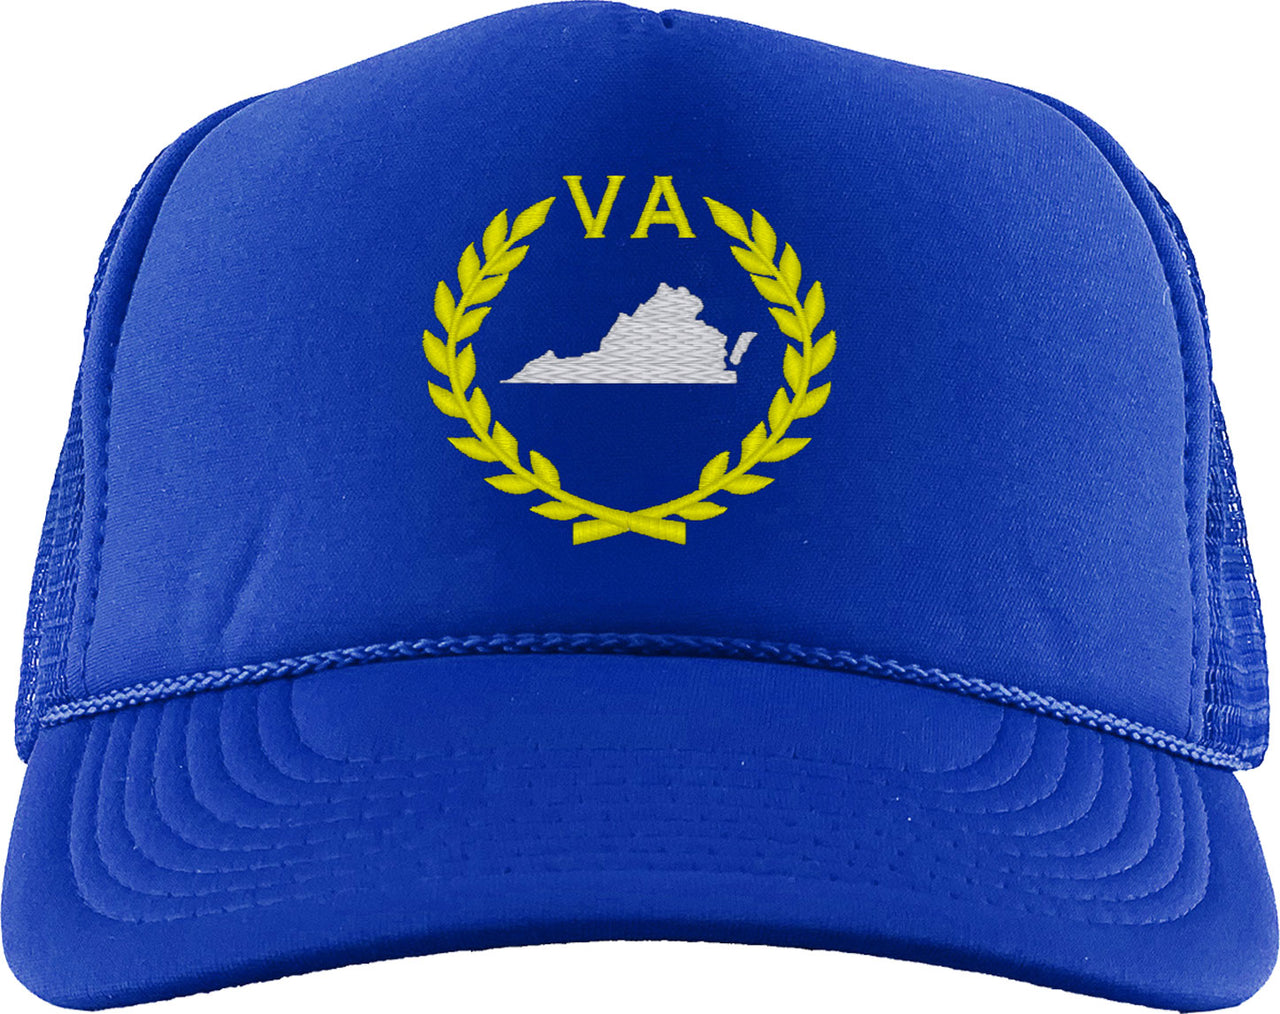 Virginia State Foam Trucker Hat